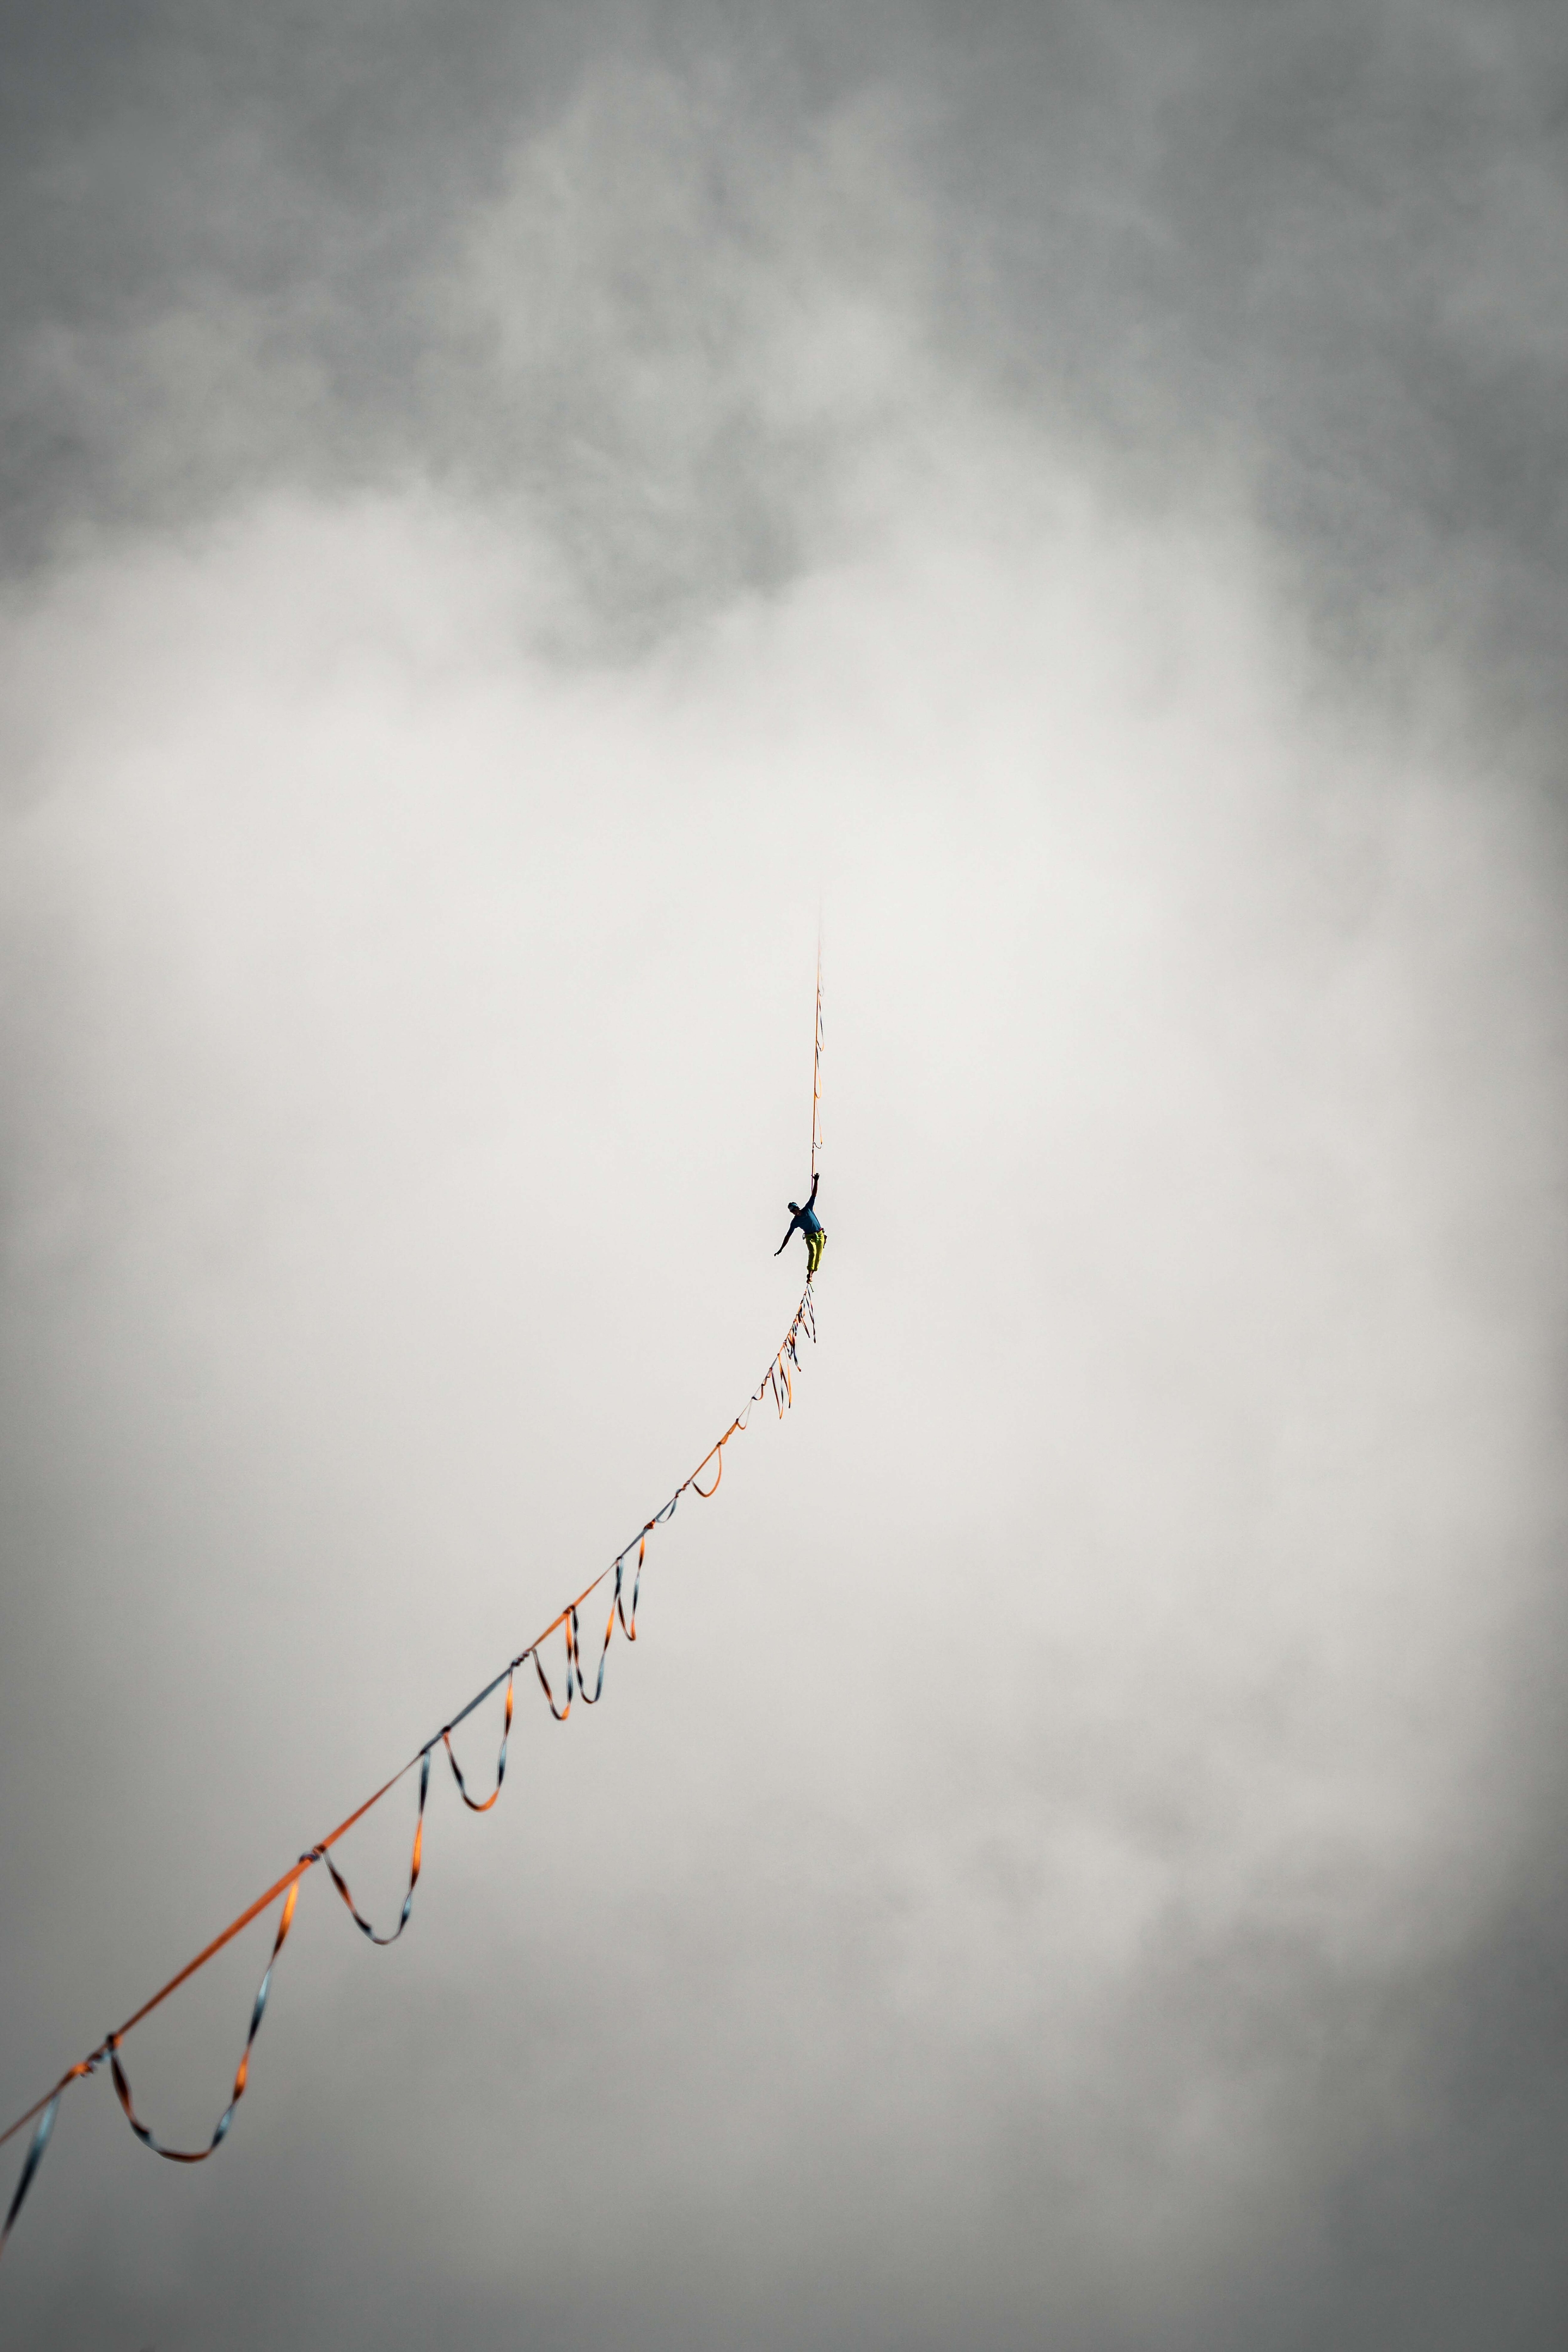 Финалист в категории «Лучшее из Instagram», 2021. Флоран Педрини гуляет в облаках между двумя пиками горы Эгюий д’Арв, Французские Альпы. Фотограф Антуан Меснаж